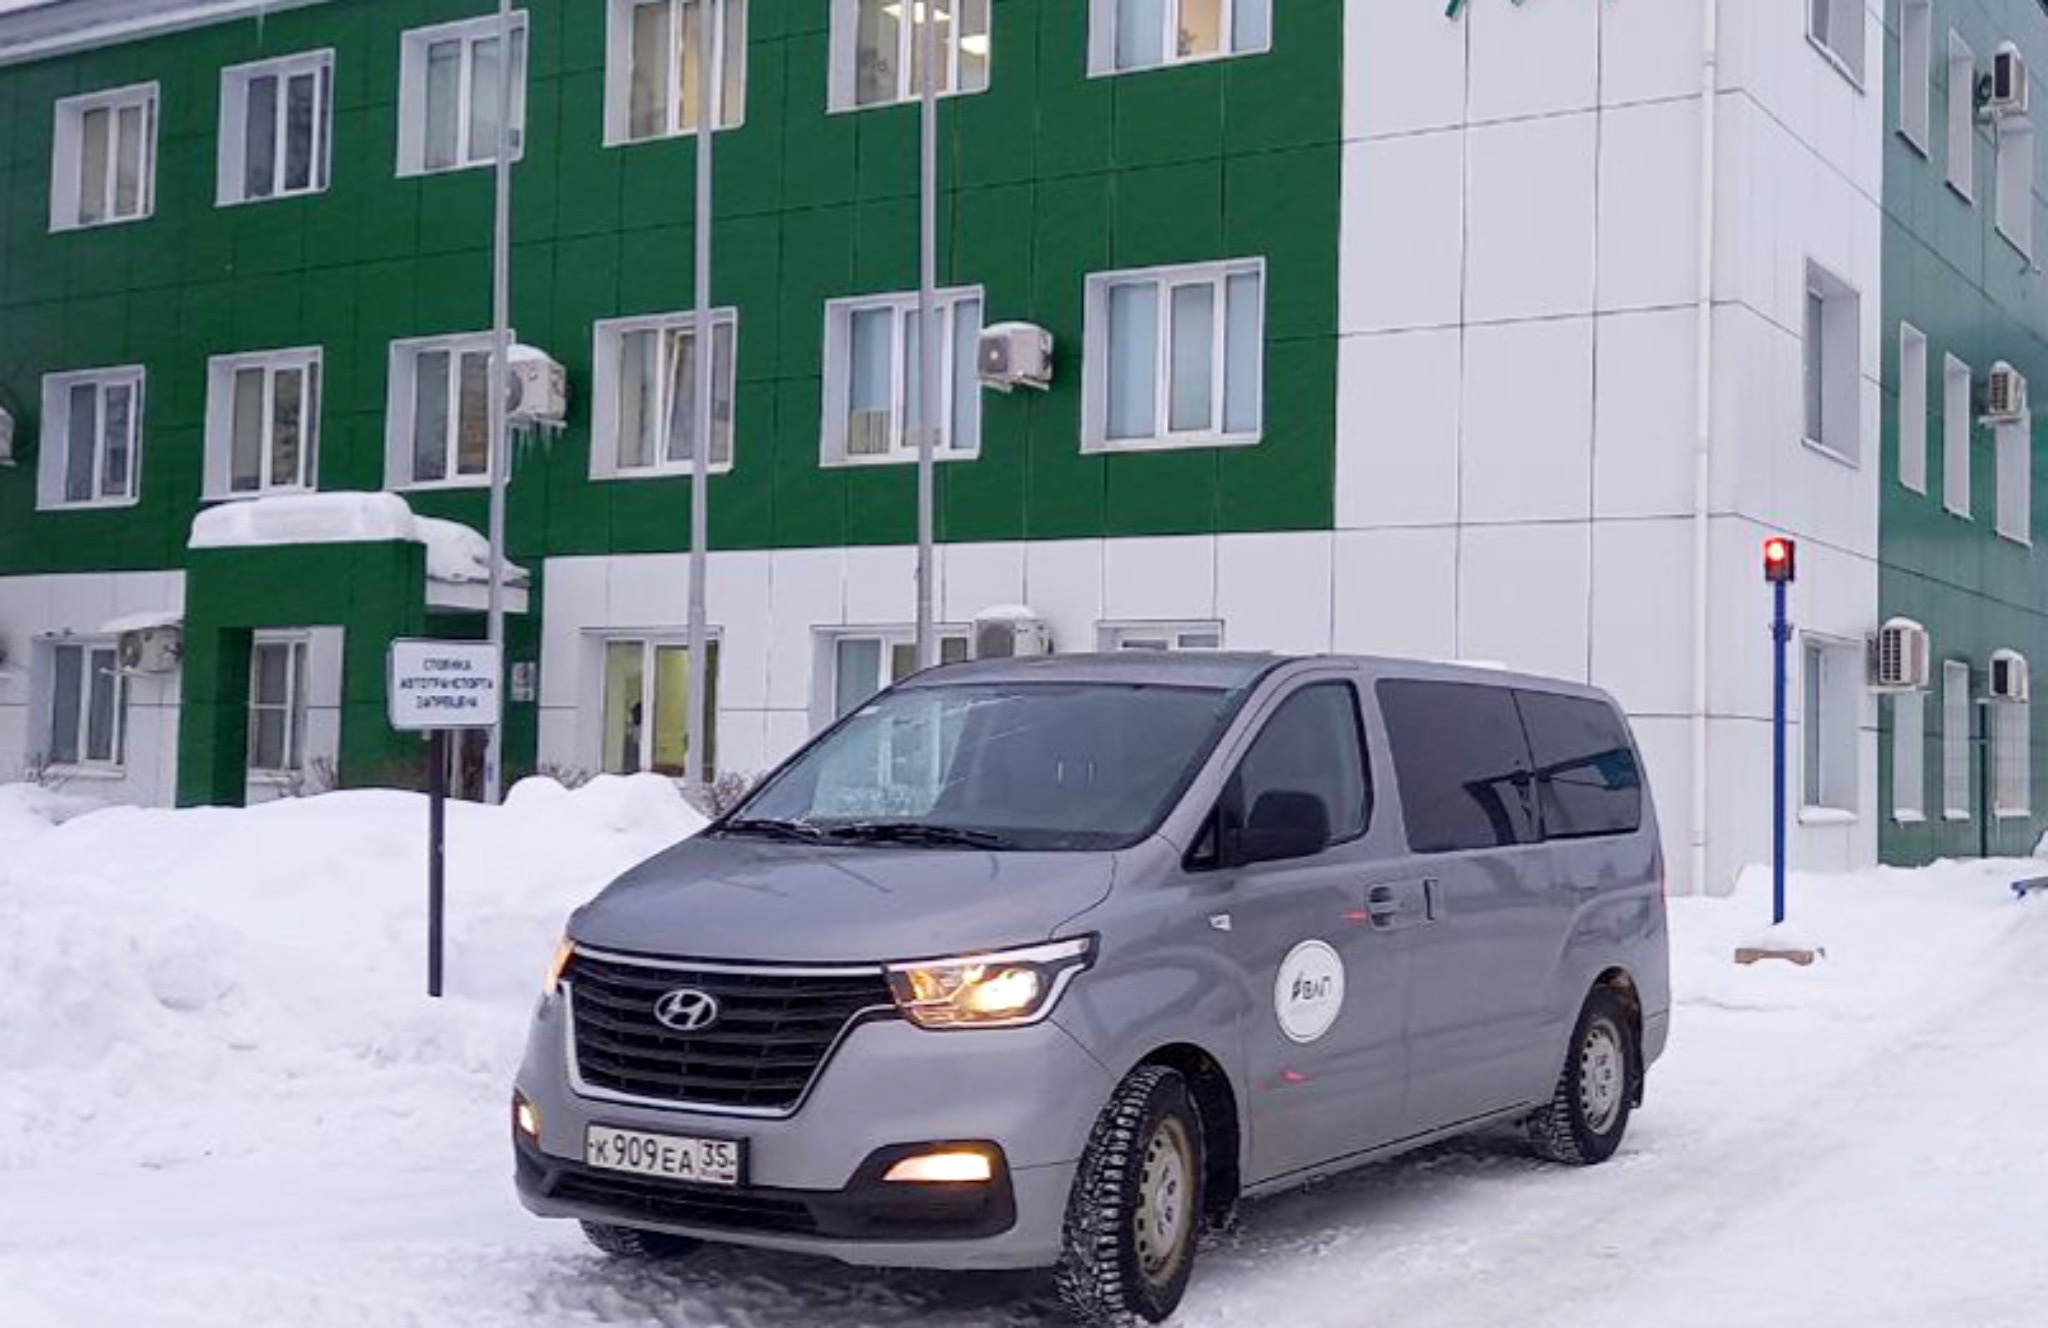 Для сотрудников «Харовсклеспром» организовали служебный транспорт